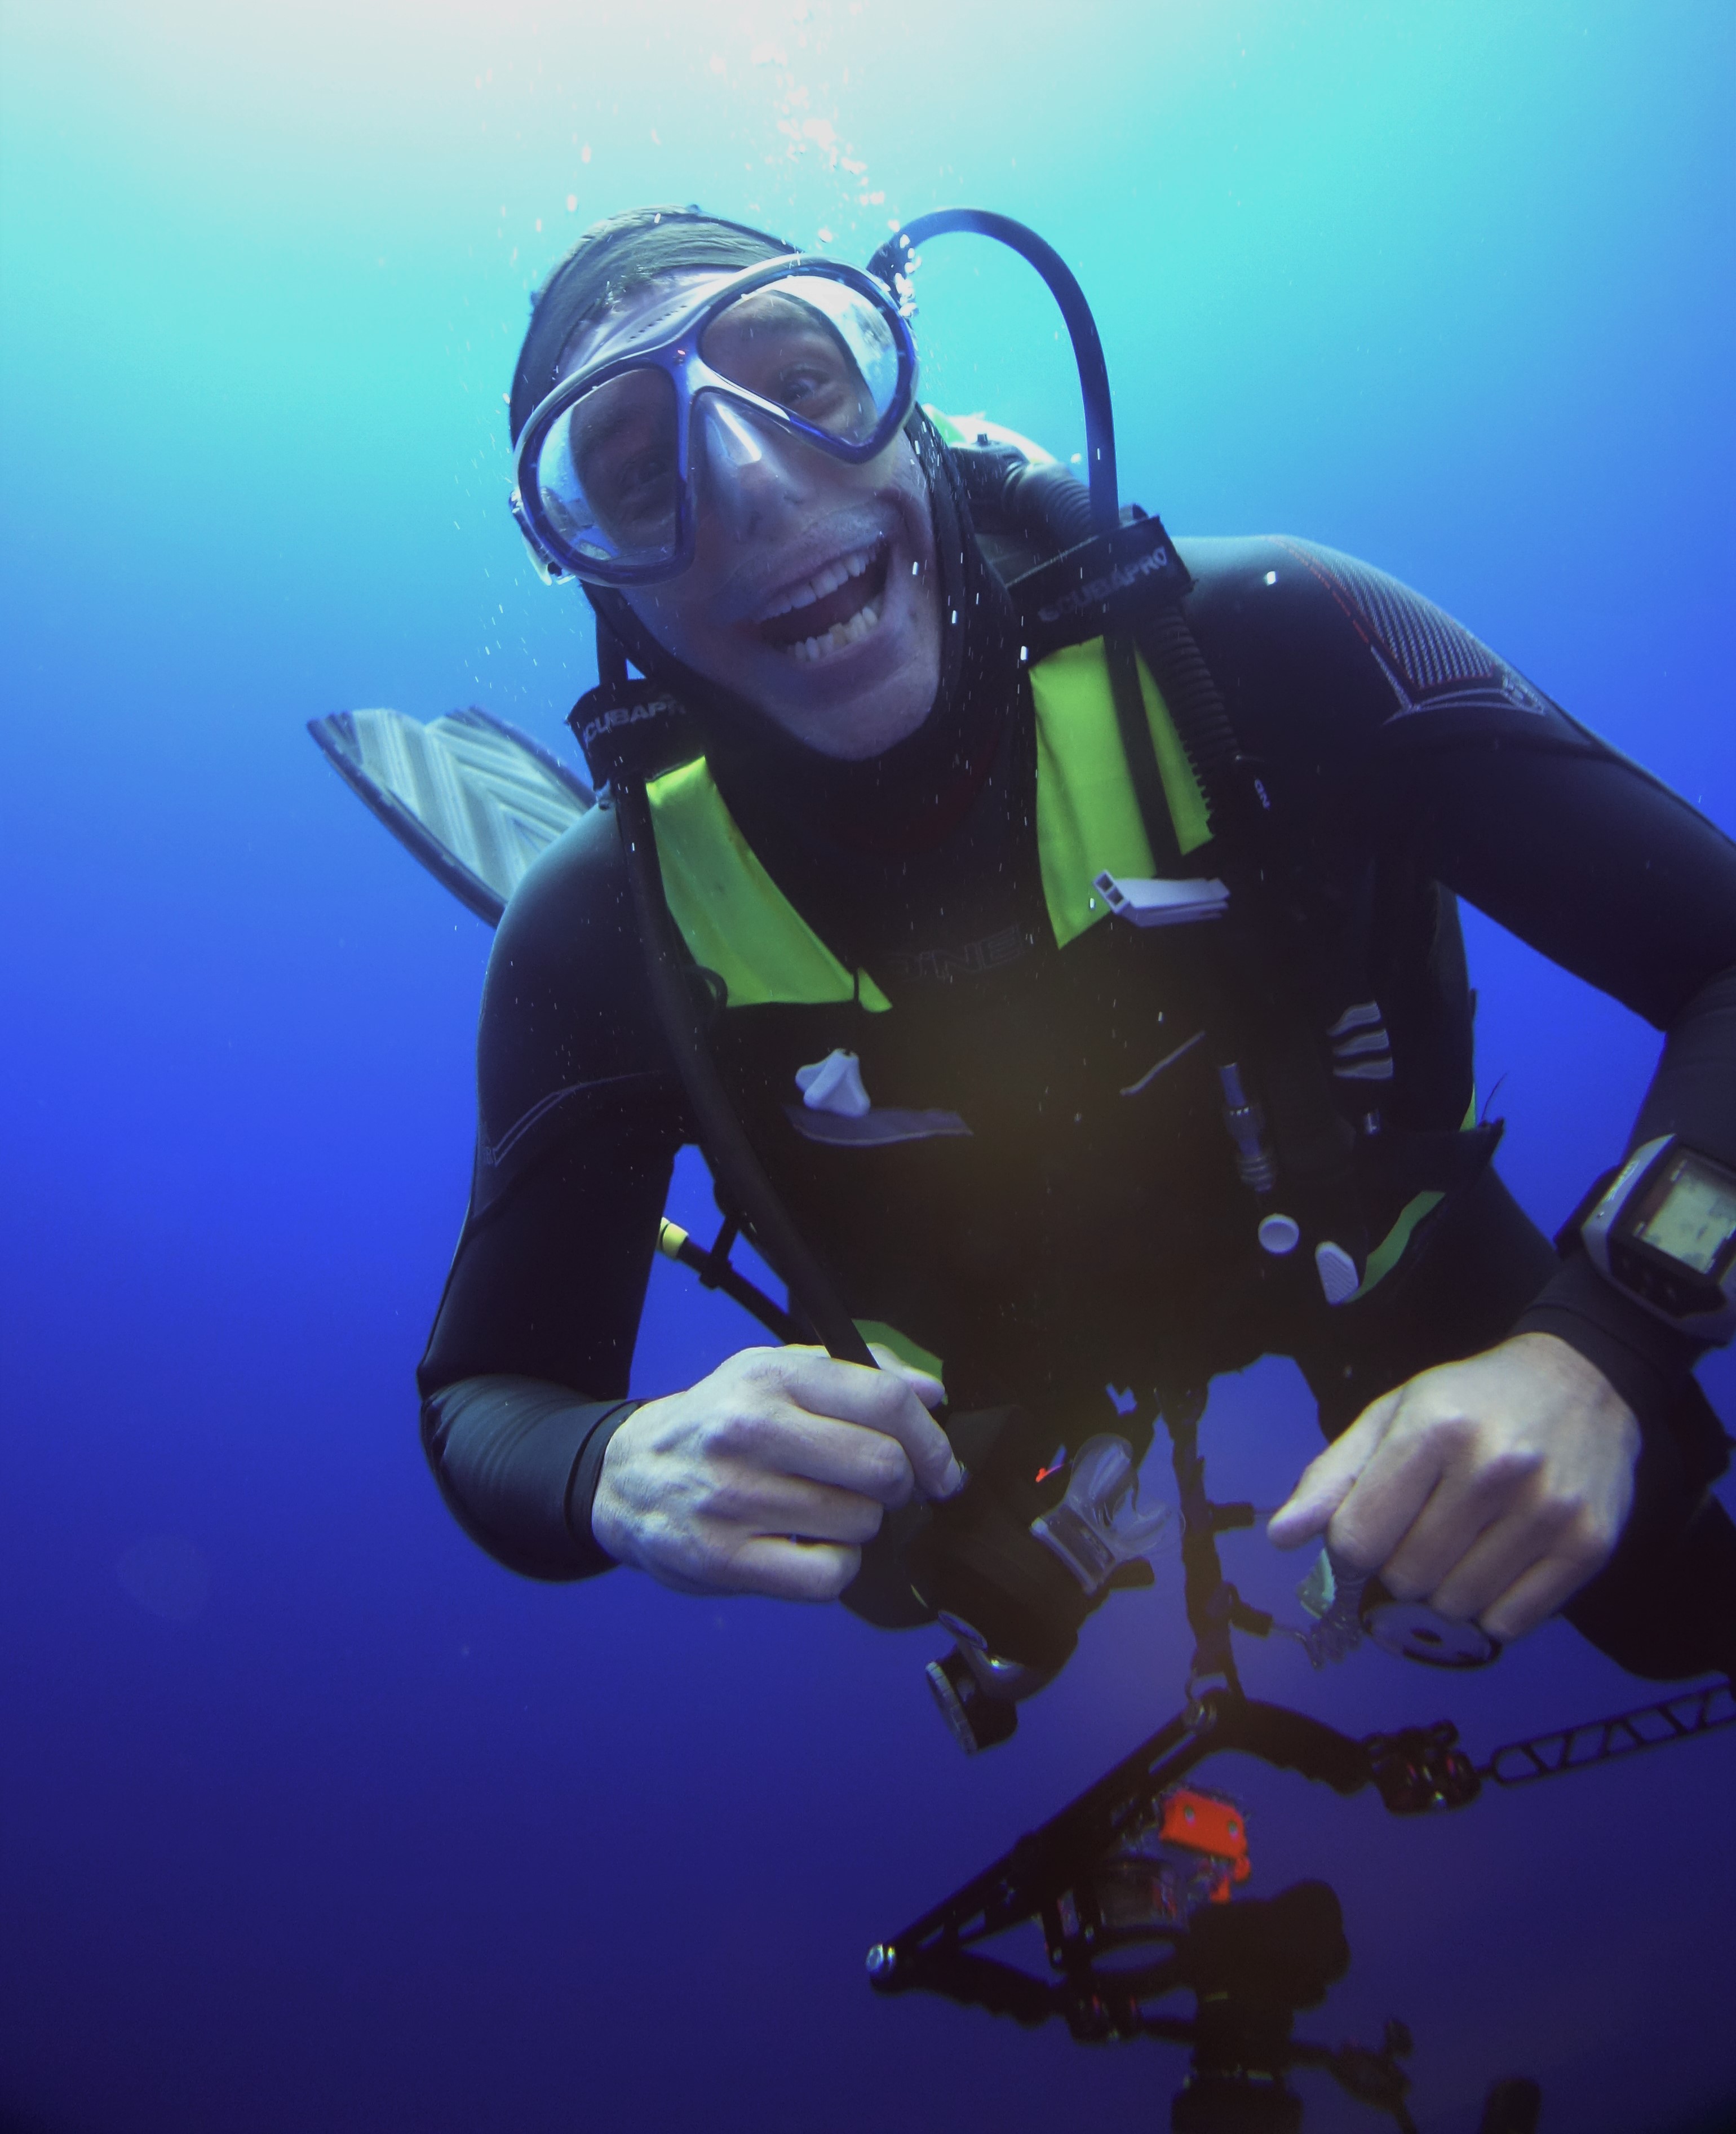 Scuba diving in the Sea of Cortez